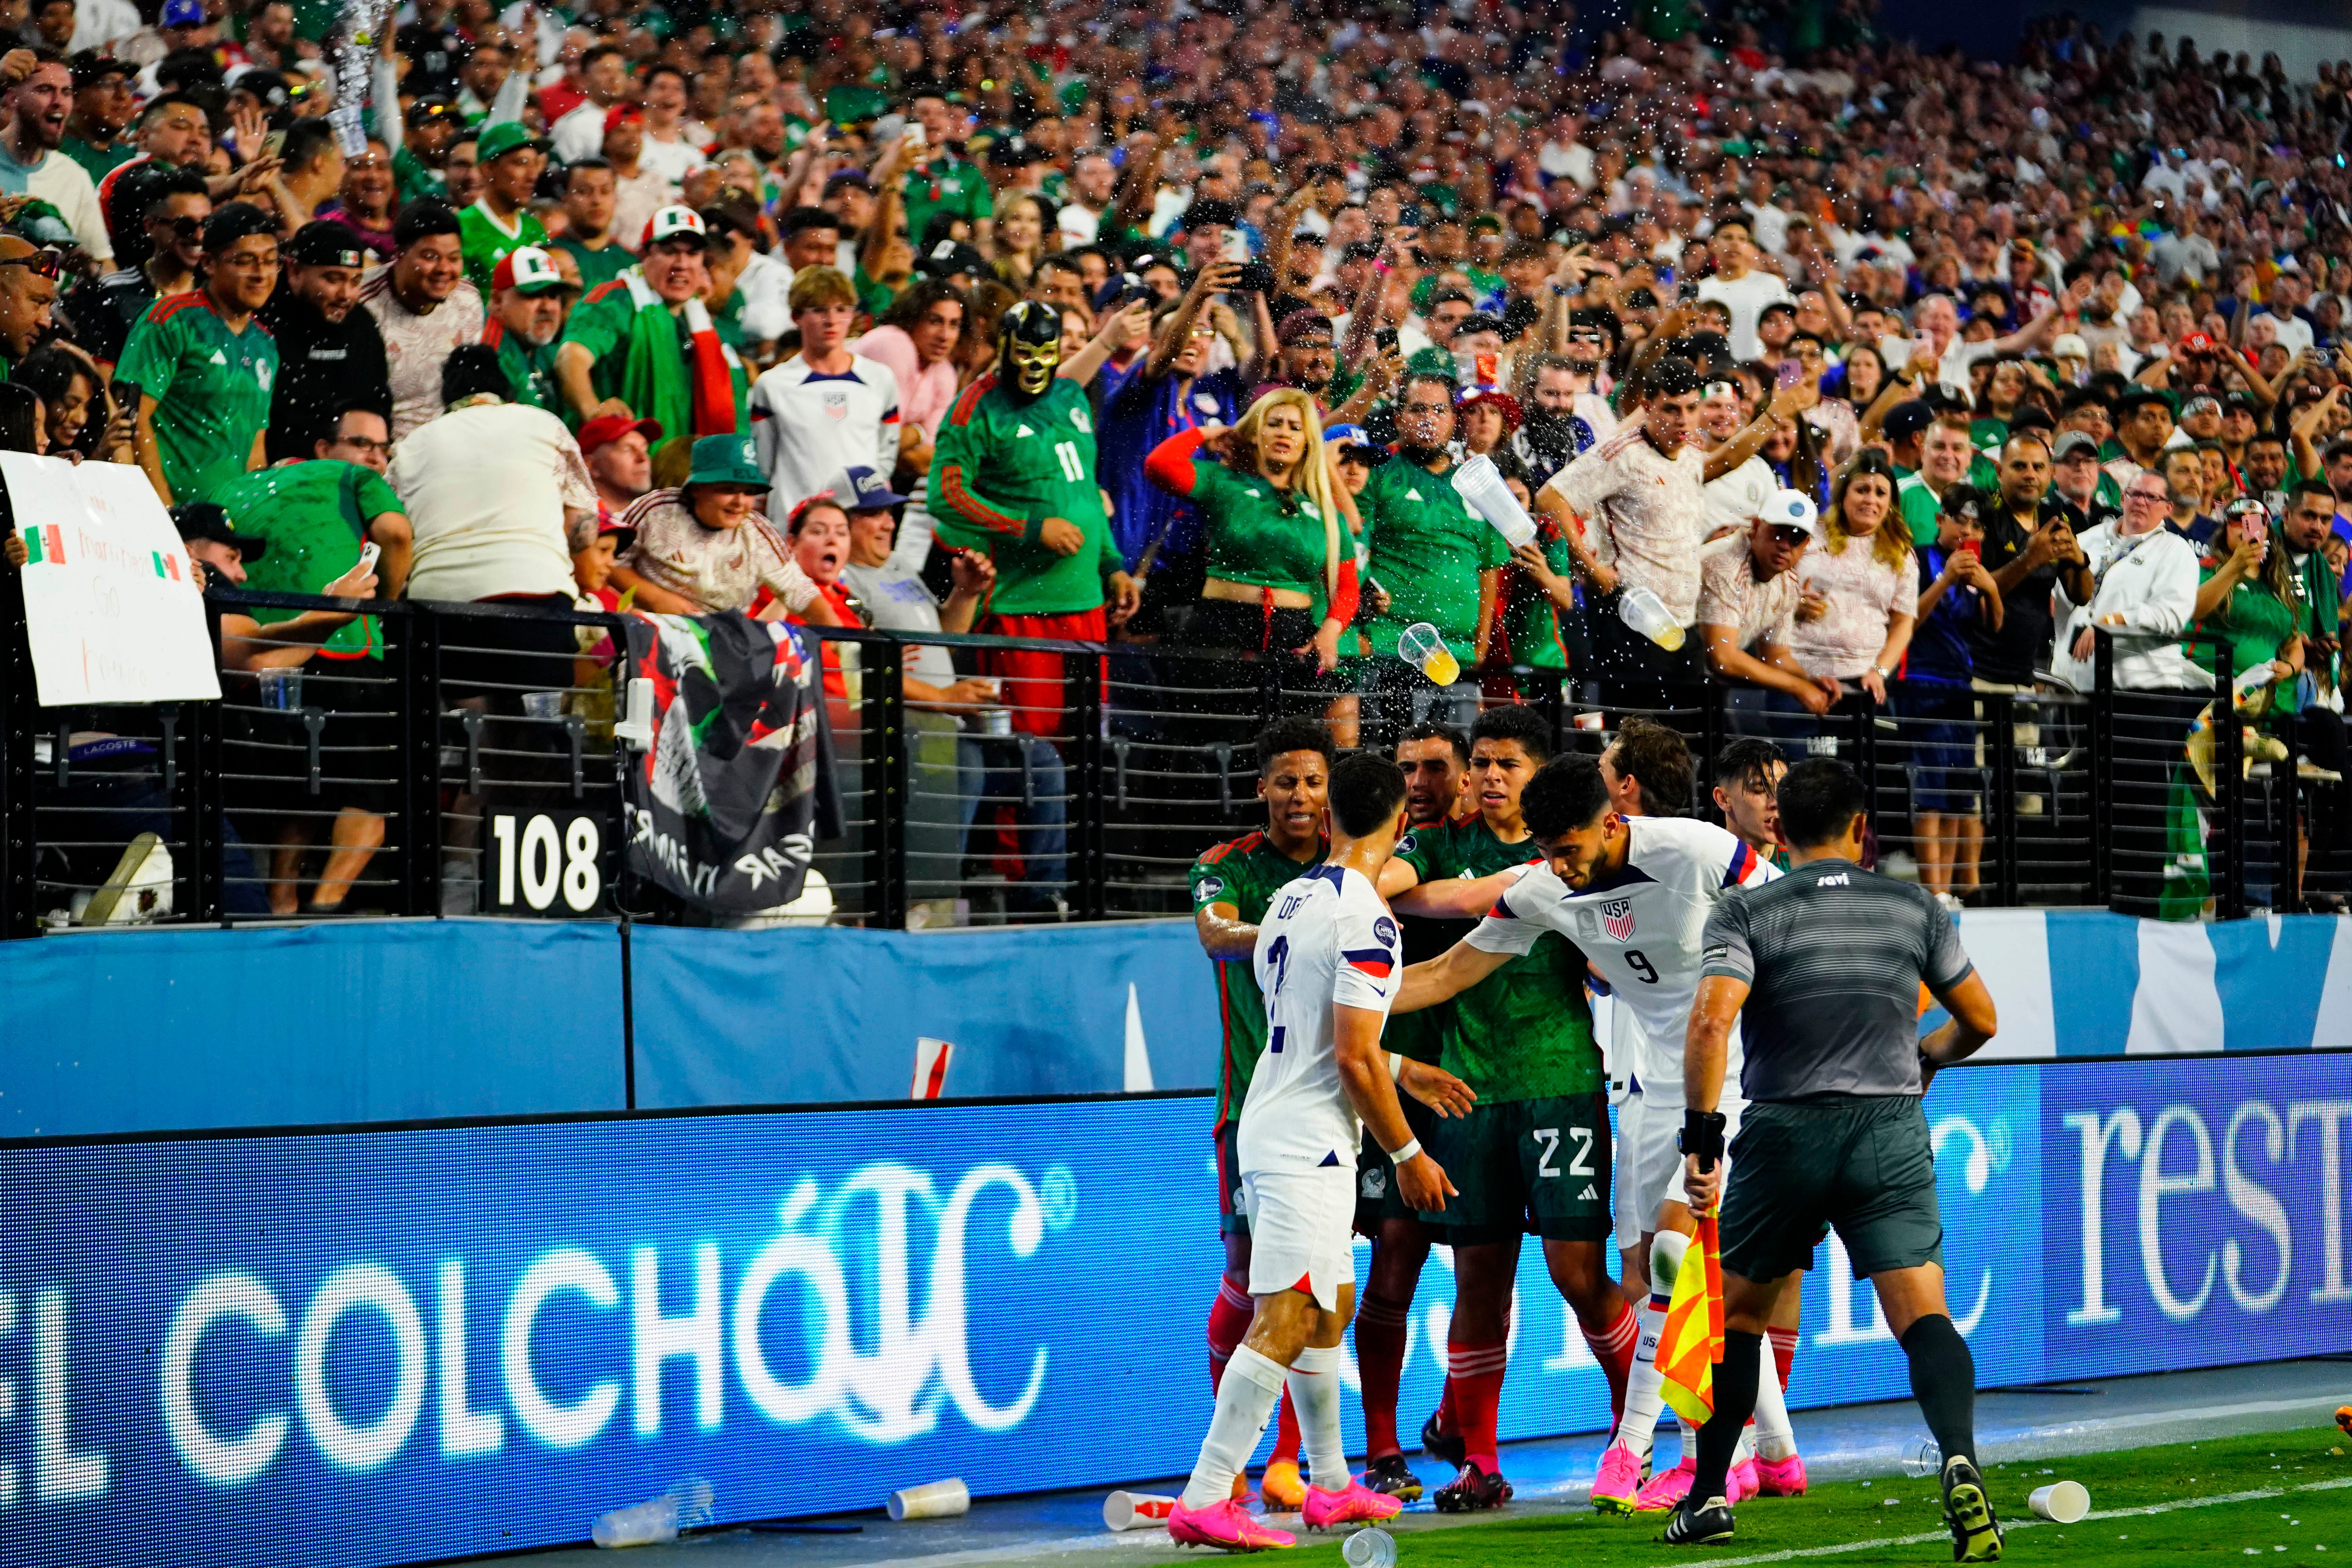 Le chant homophobe des supporters mexicains nécessite une action réelle de la FIFA et de la Concacaf